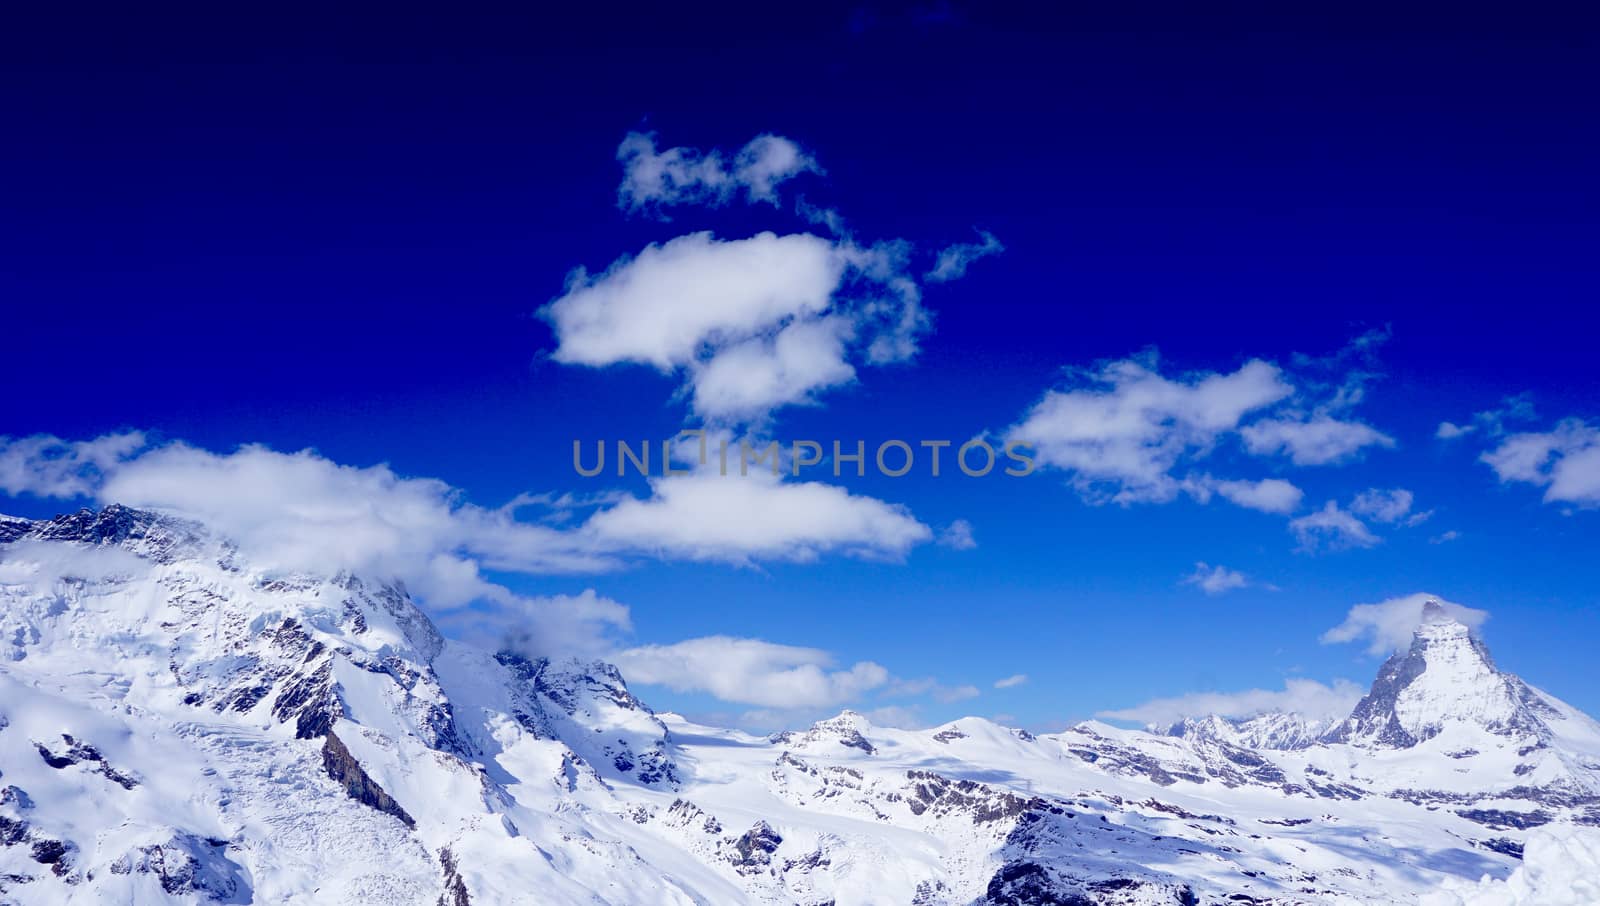 View of Matterhorn on a clear sunny day, Zermatt, Switzerland